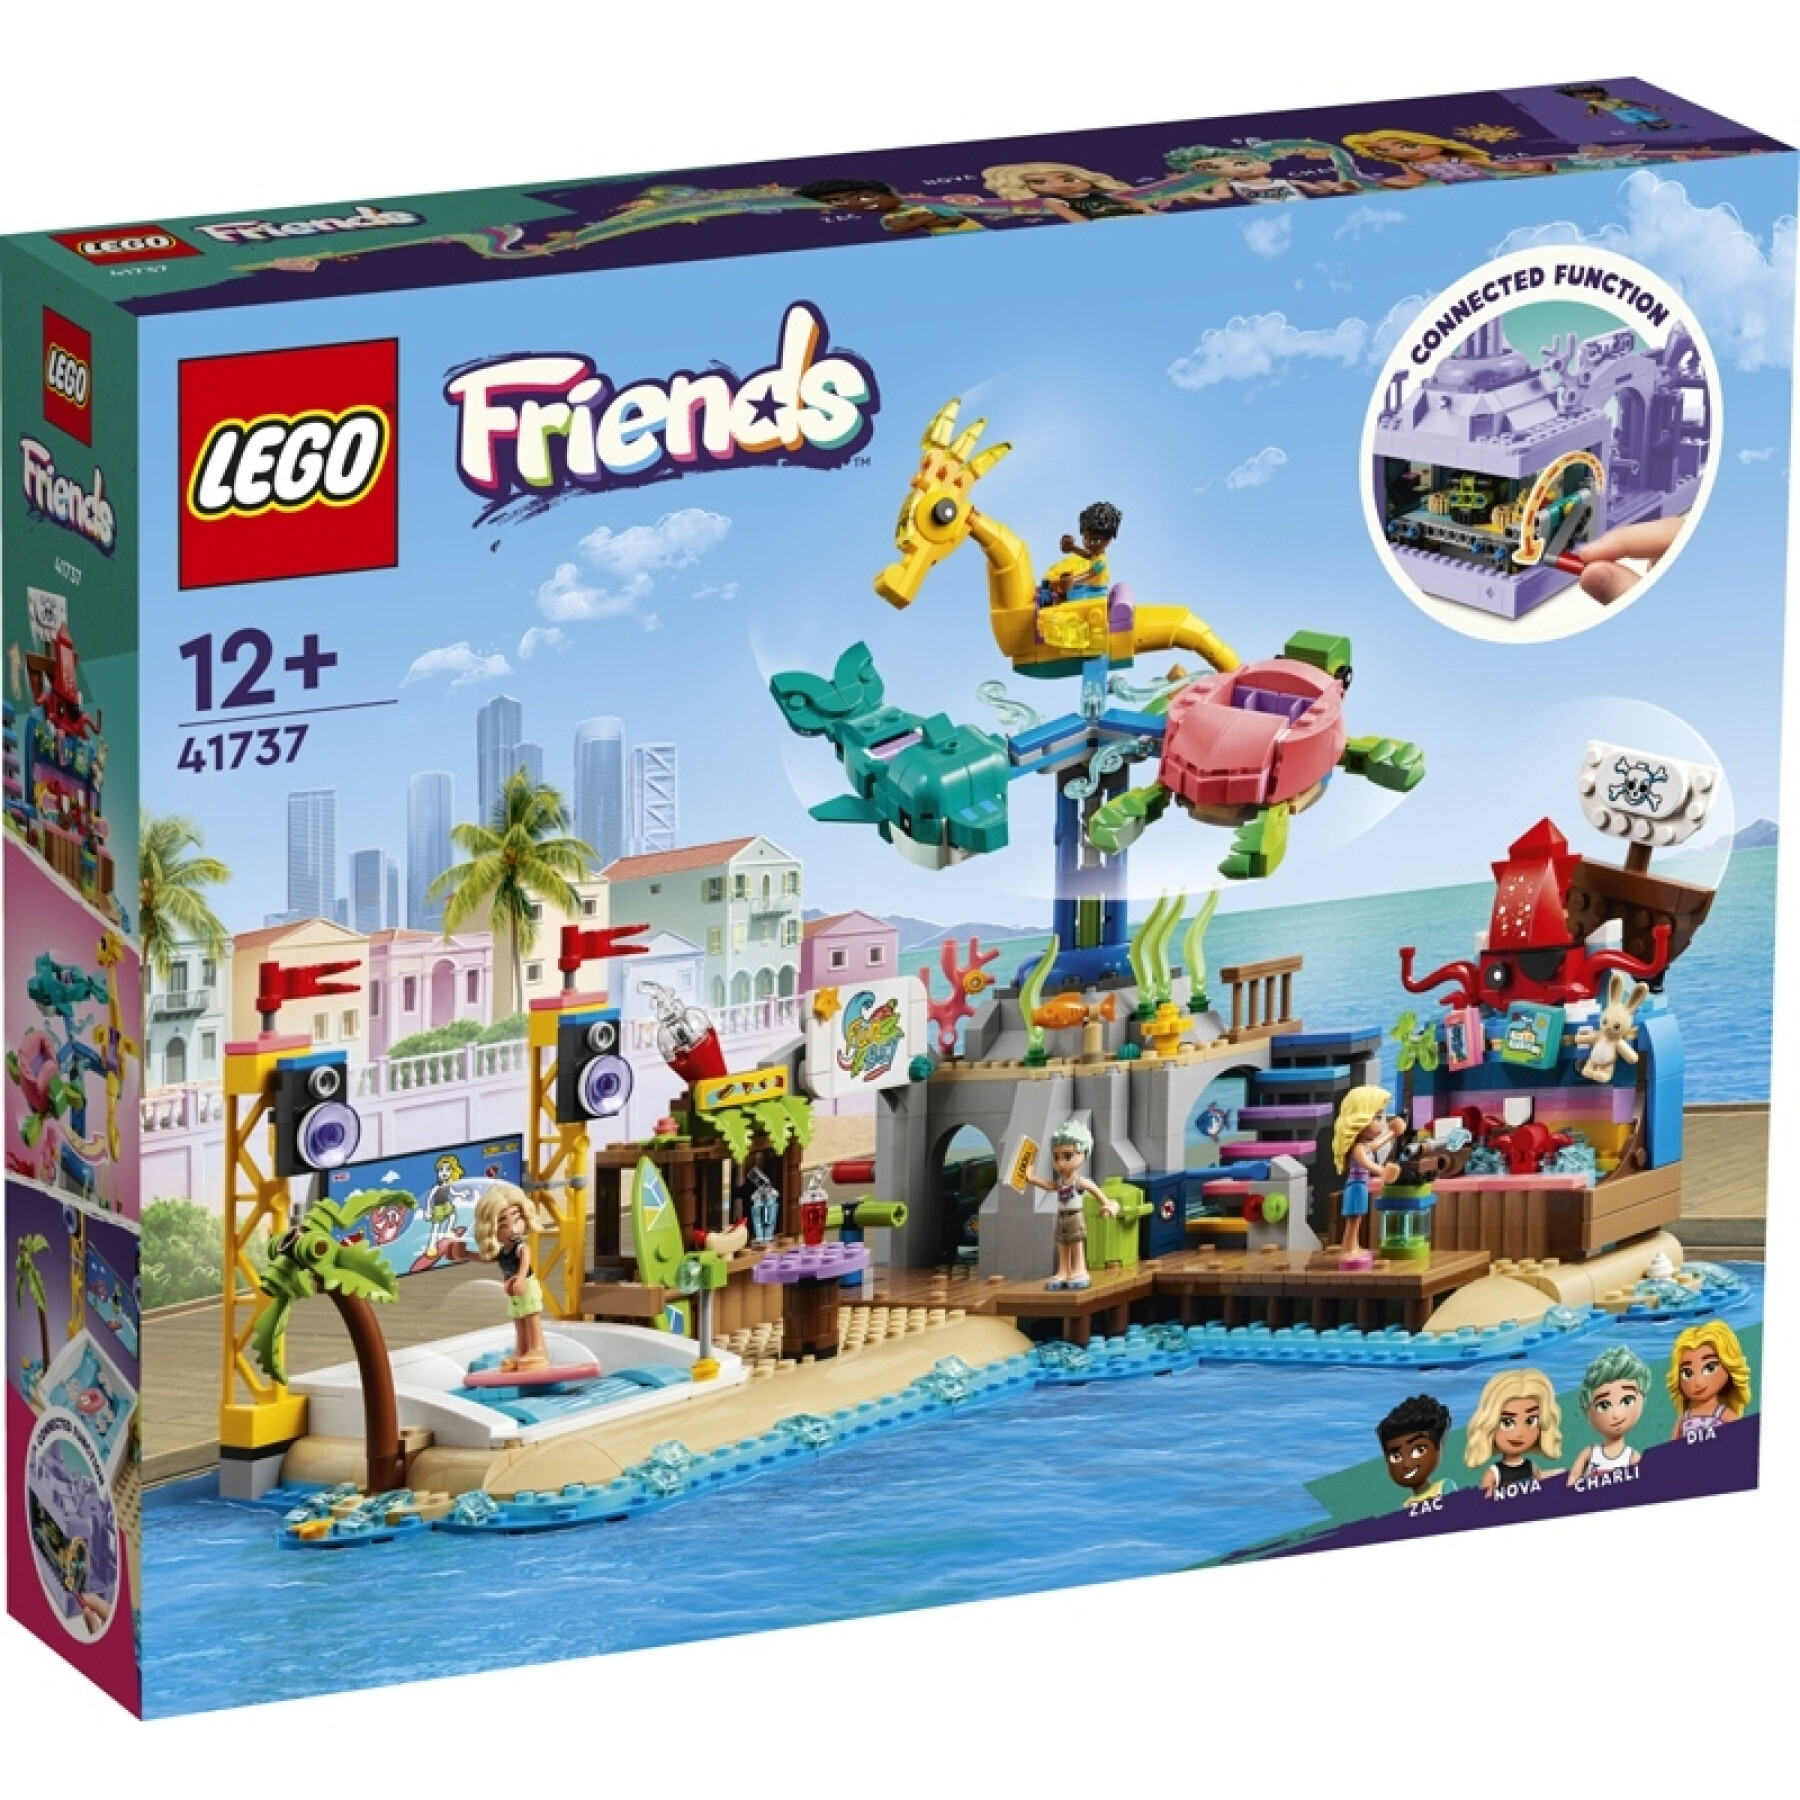 Construction games amusement park beach Lego Friends